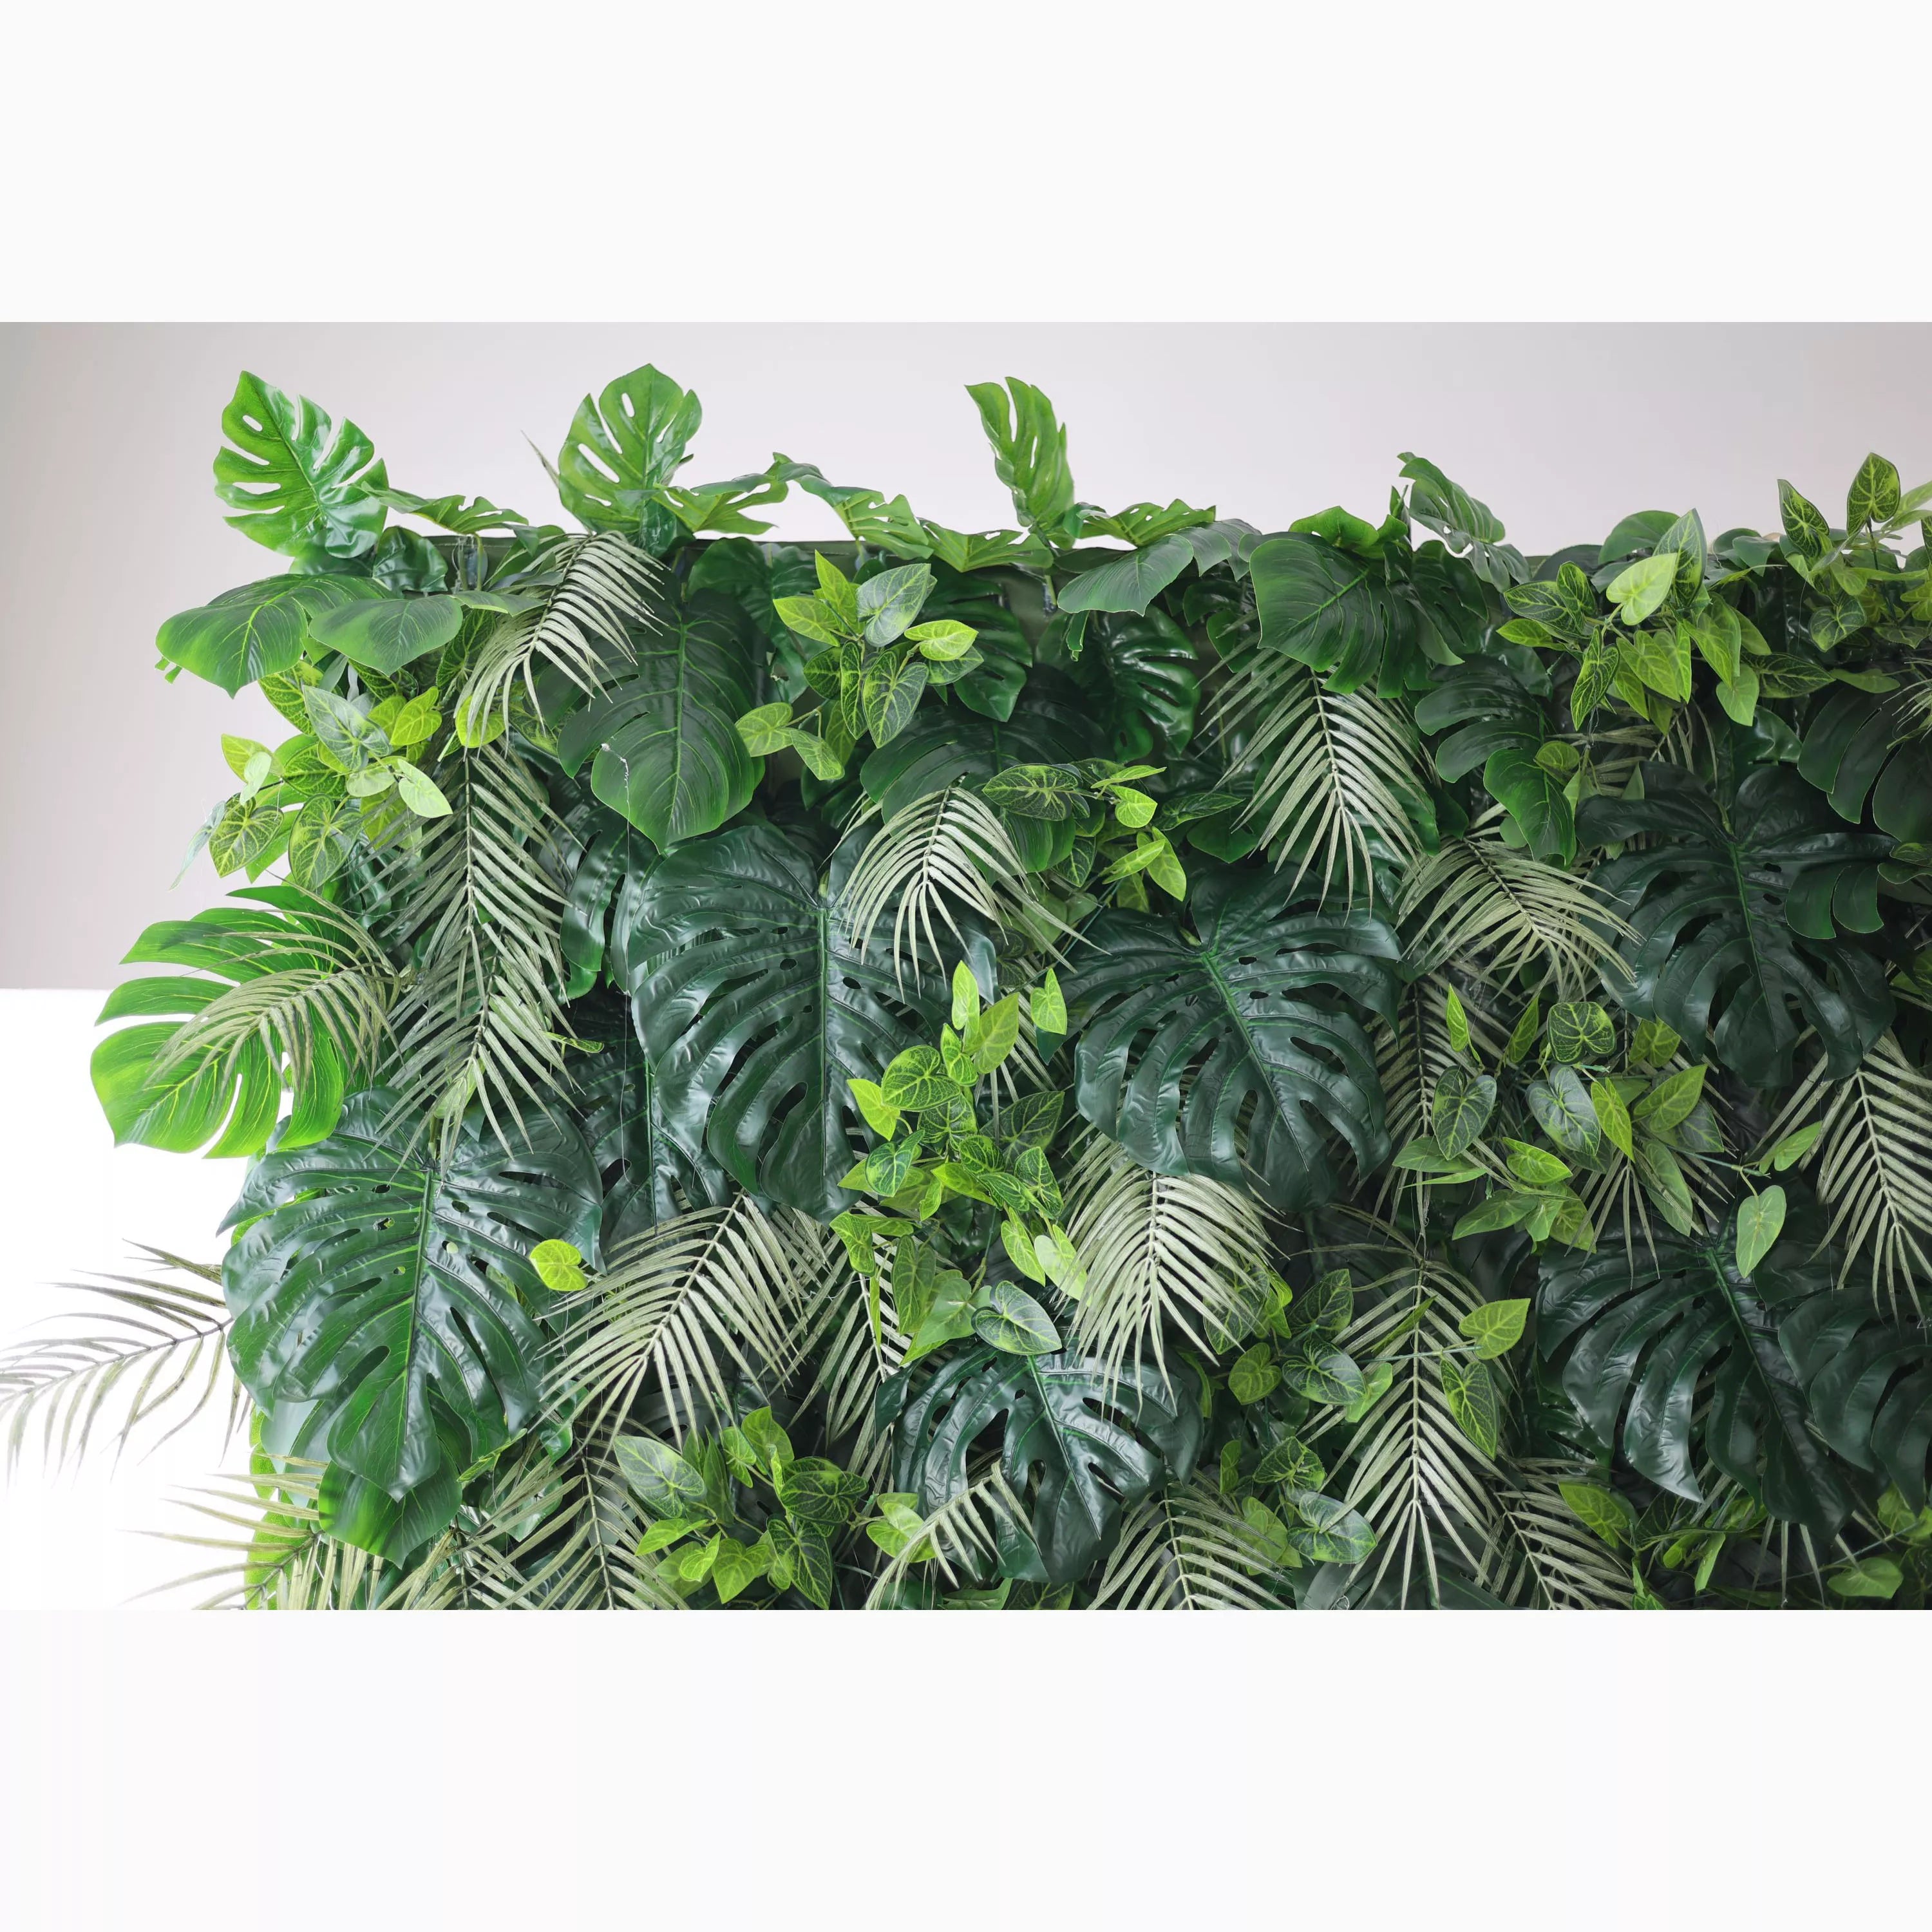 هدايا زهور فالار: Eden الاستوائية-قماش اصطناعي رائع أخضر